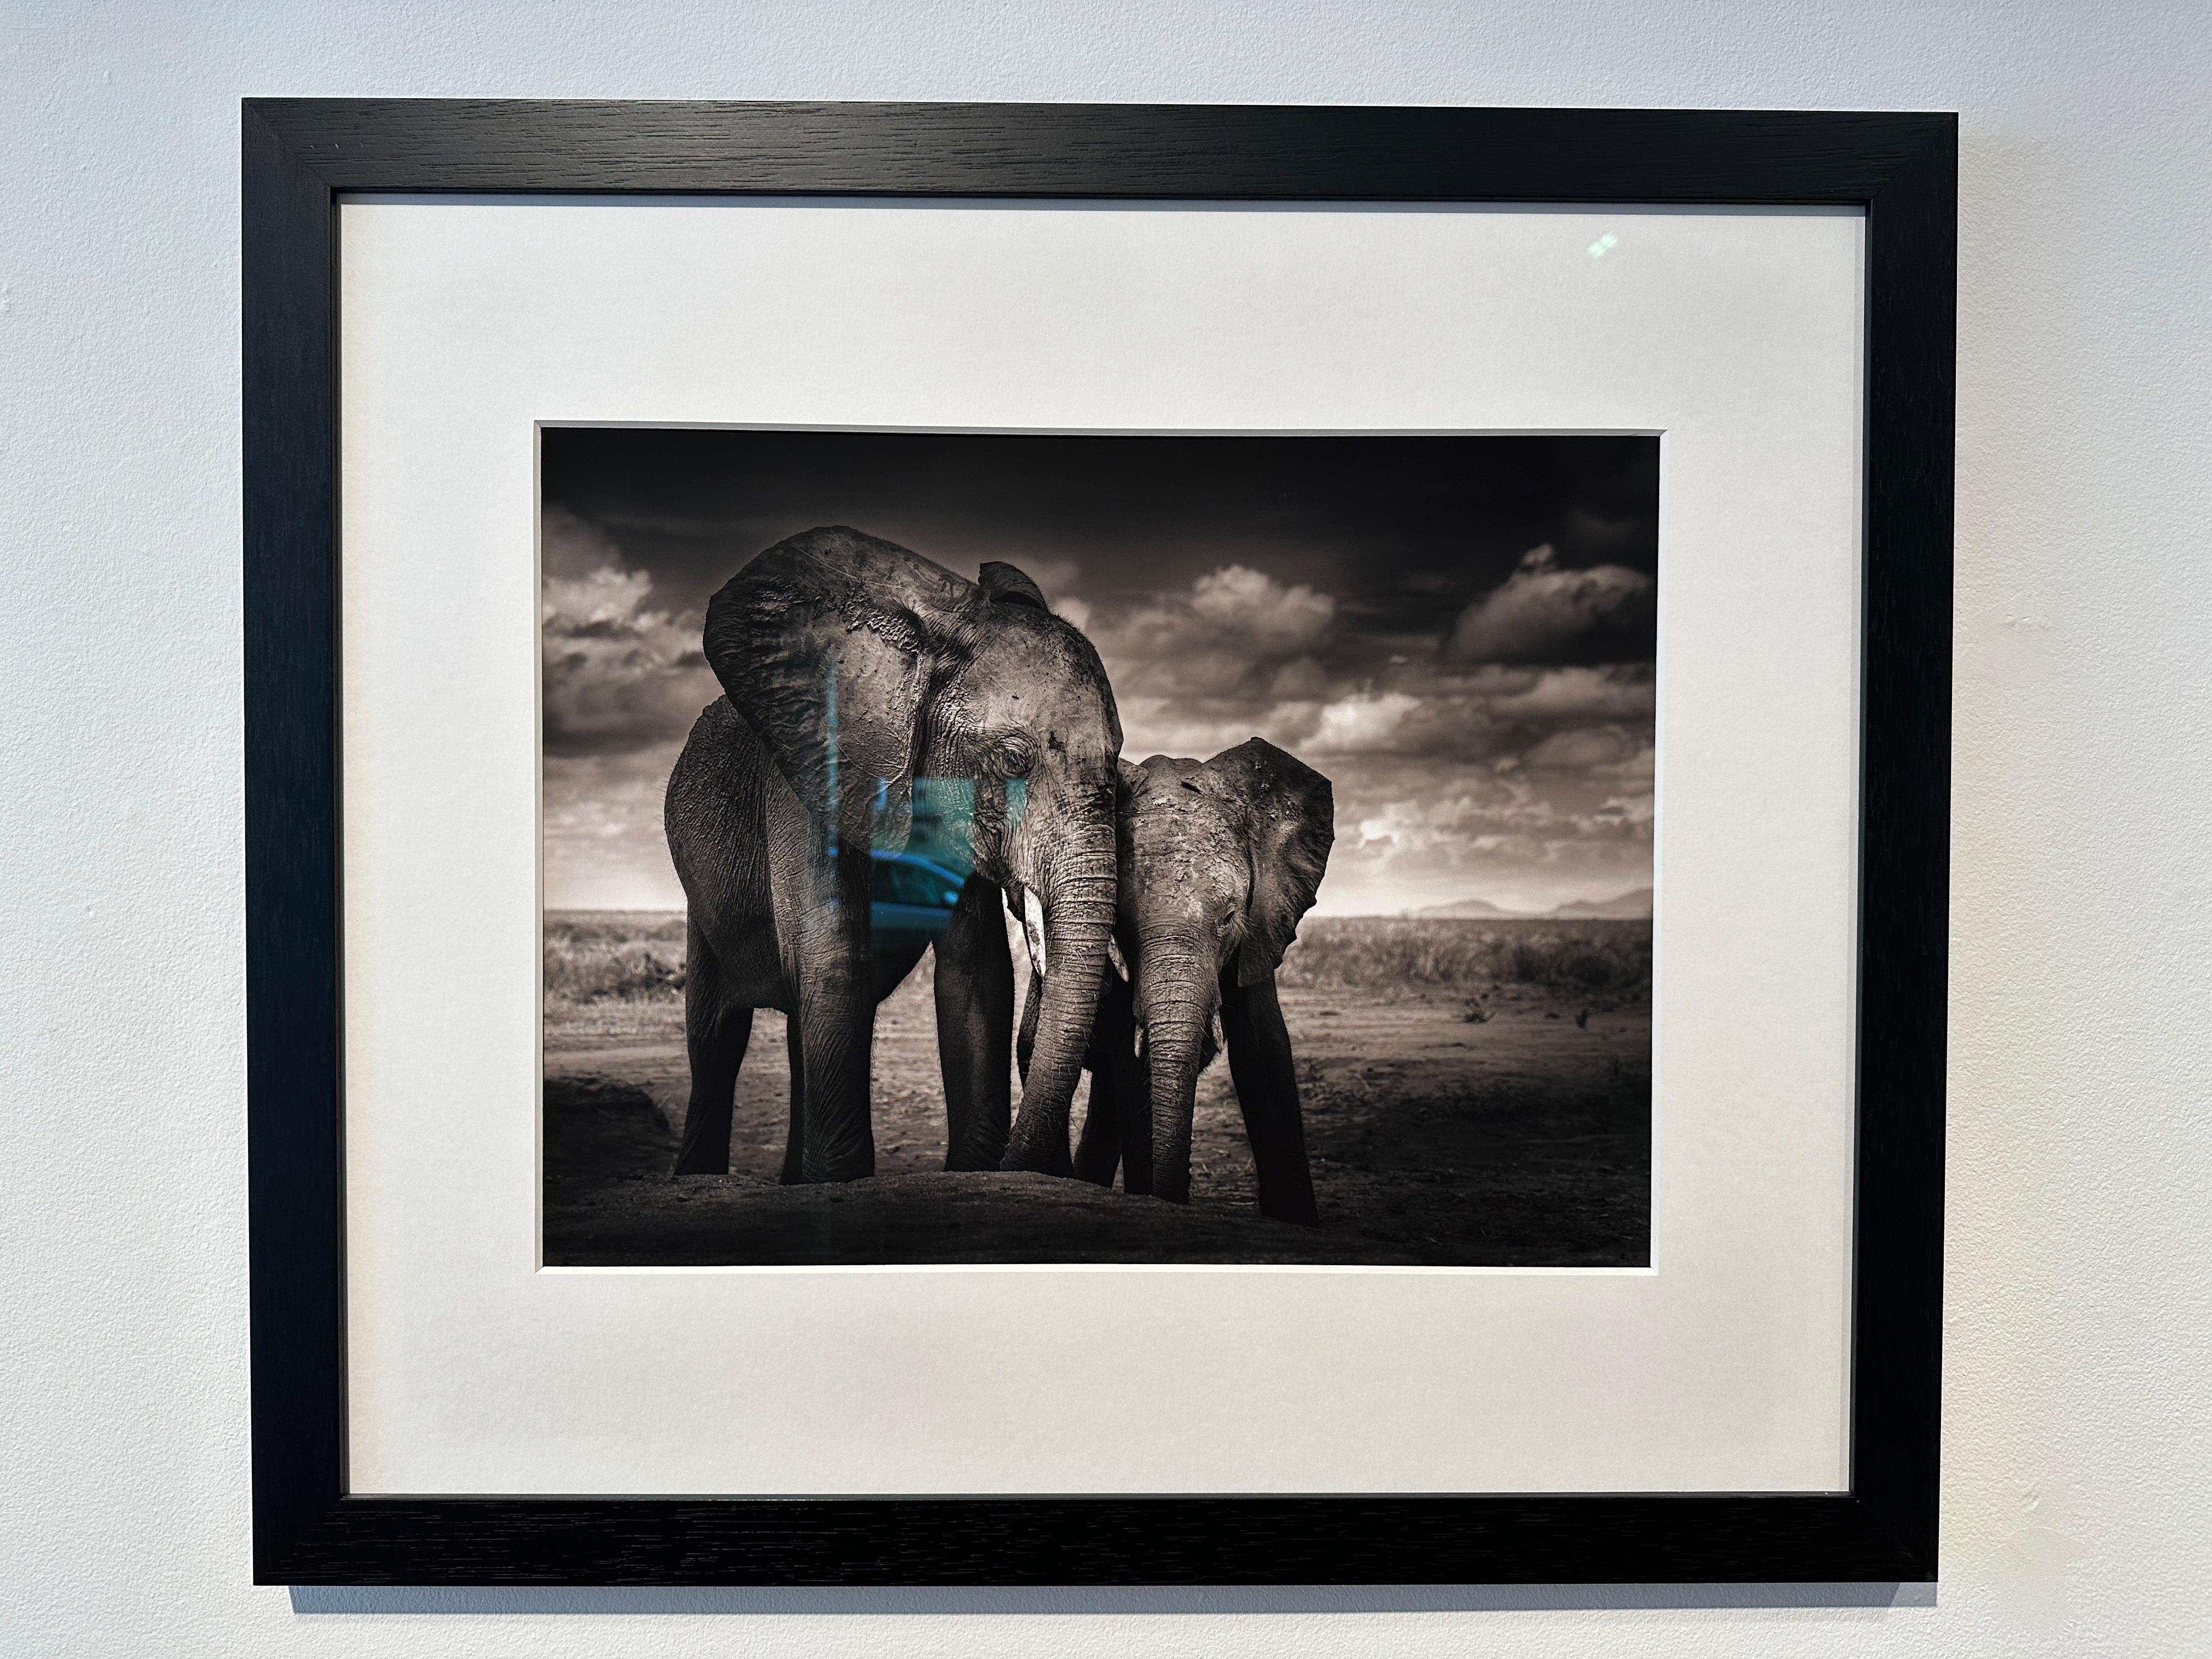 Soulmates, Éléphant, animal, faune sauvage, photographies en noir et blanc - Photograph de Joachim Schmeisser